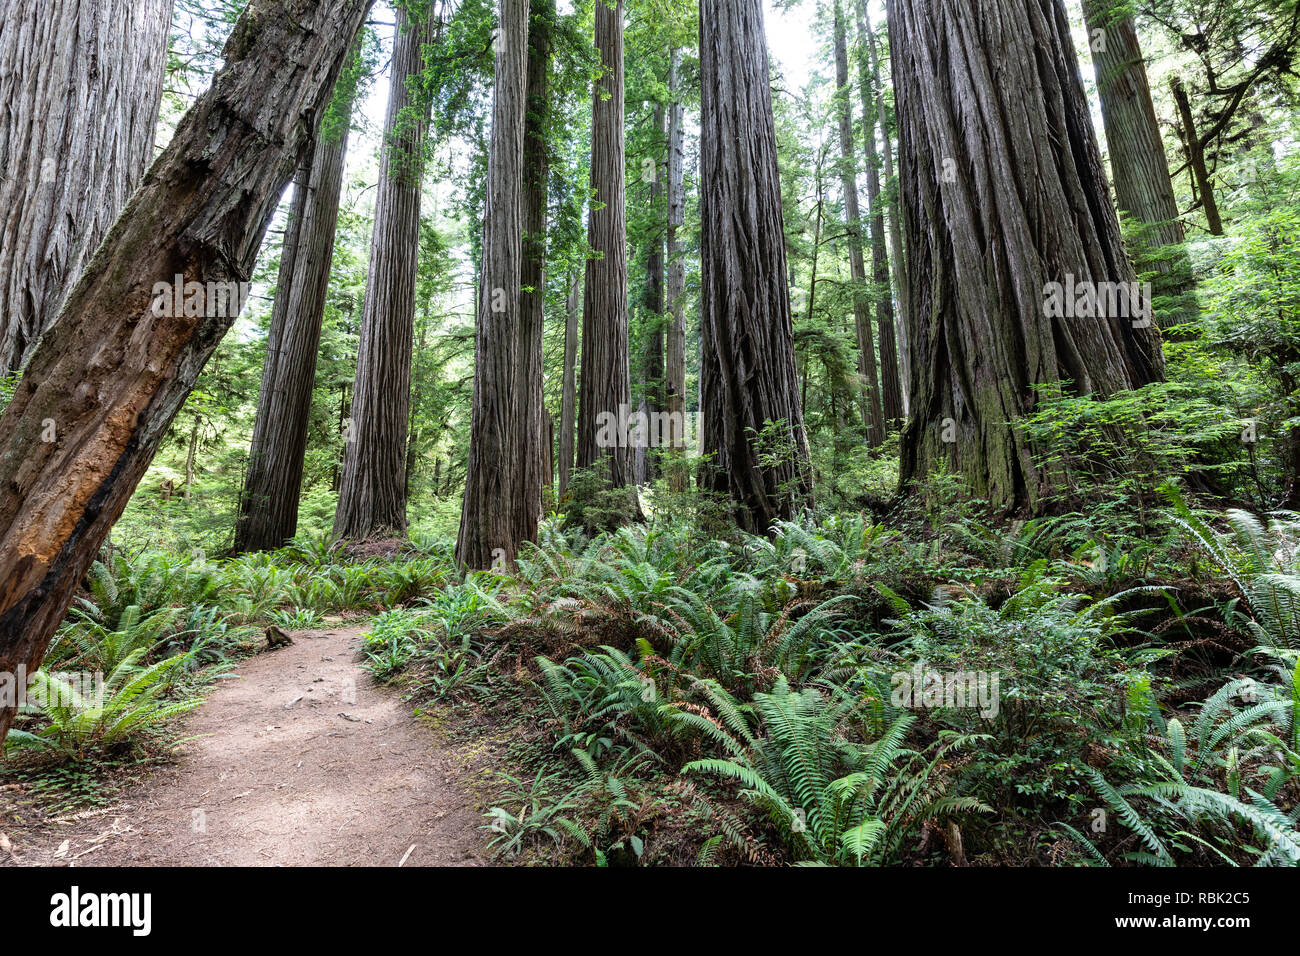 El árbol de Boy Scouts sendero serpentea a través de un salvaje viejo crecimiento secuoya (Sequoia sempervirens) bosque en Jedediah Smith Redwoods State Park. Foto de stock